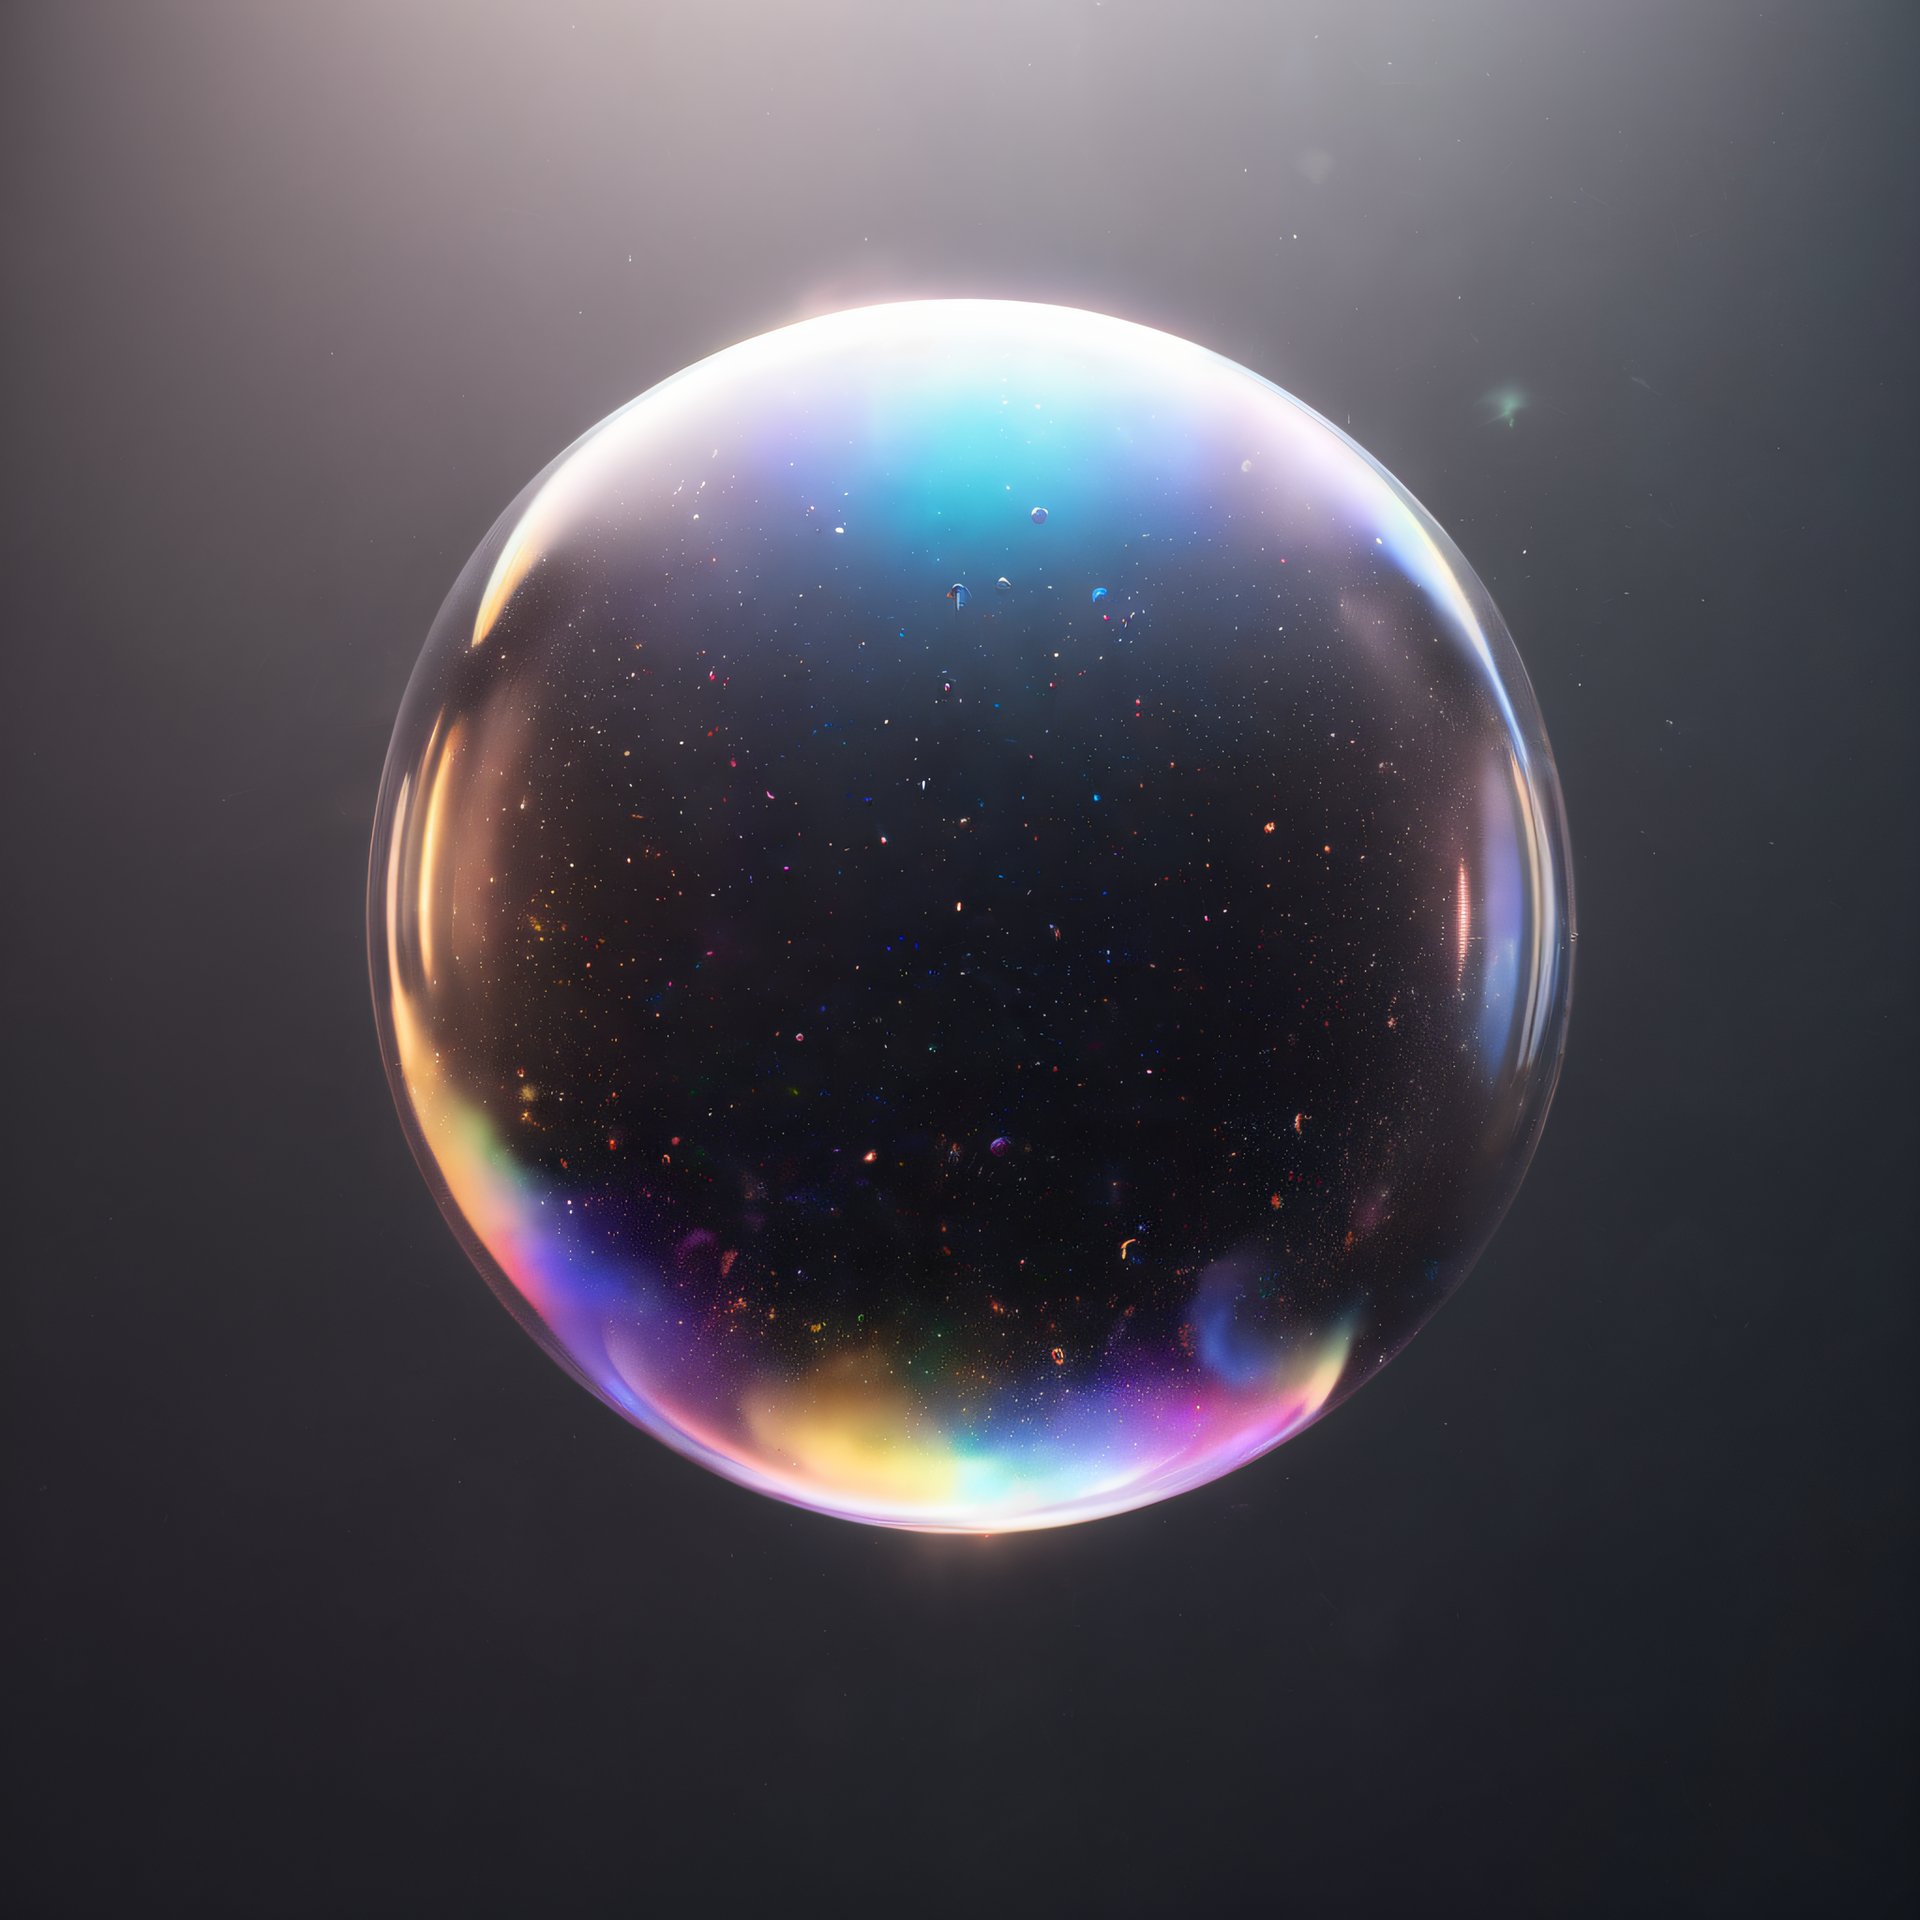 Universe in a bubble